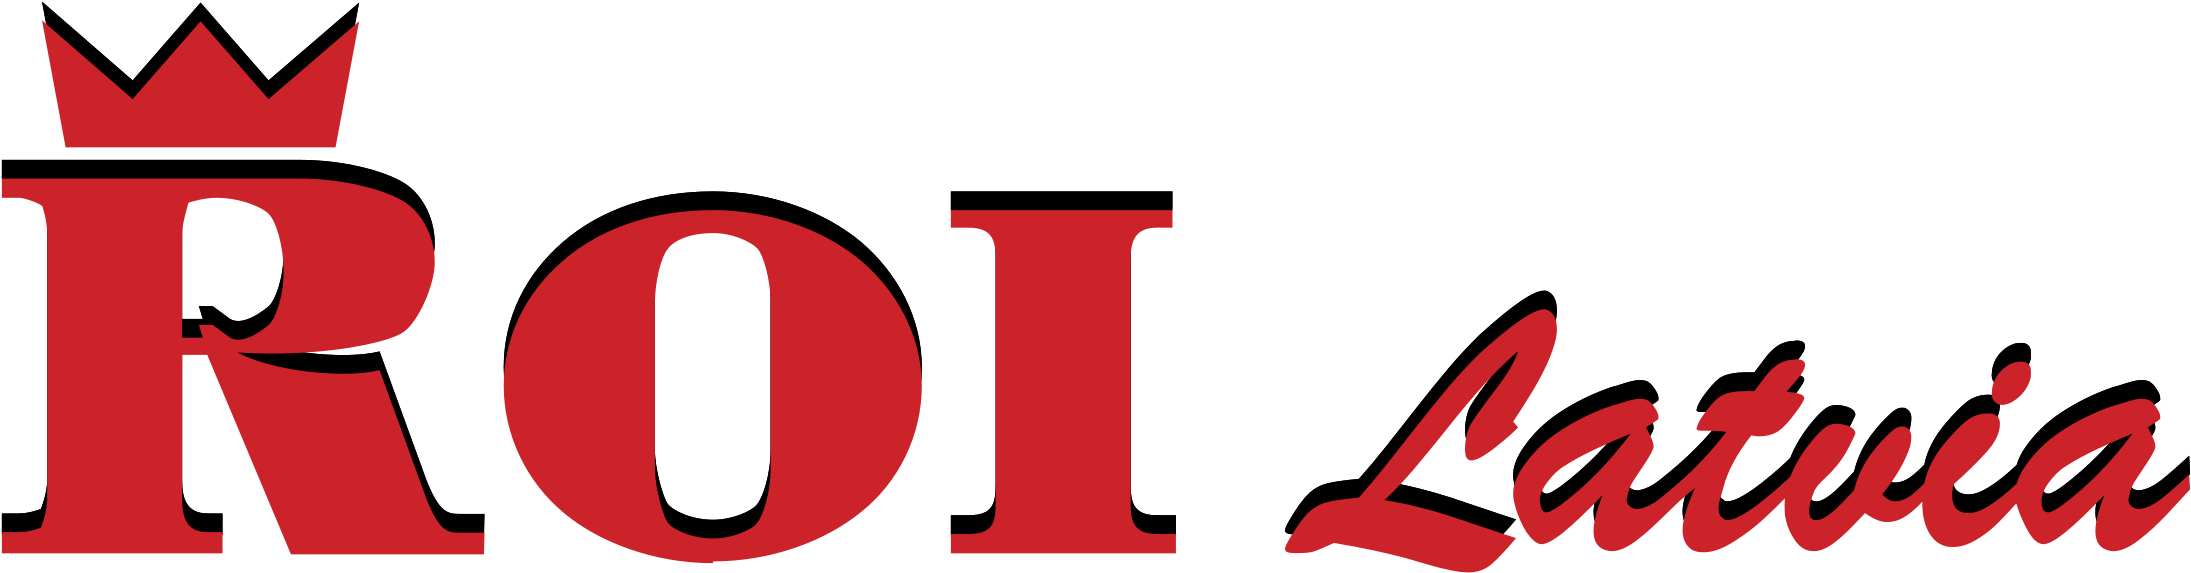 R O I Latvia Logo PNG image